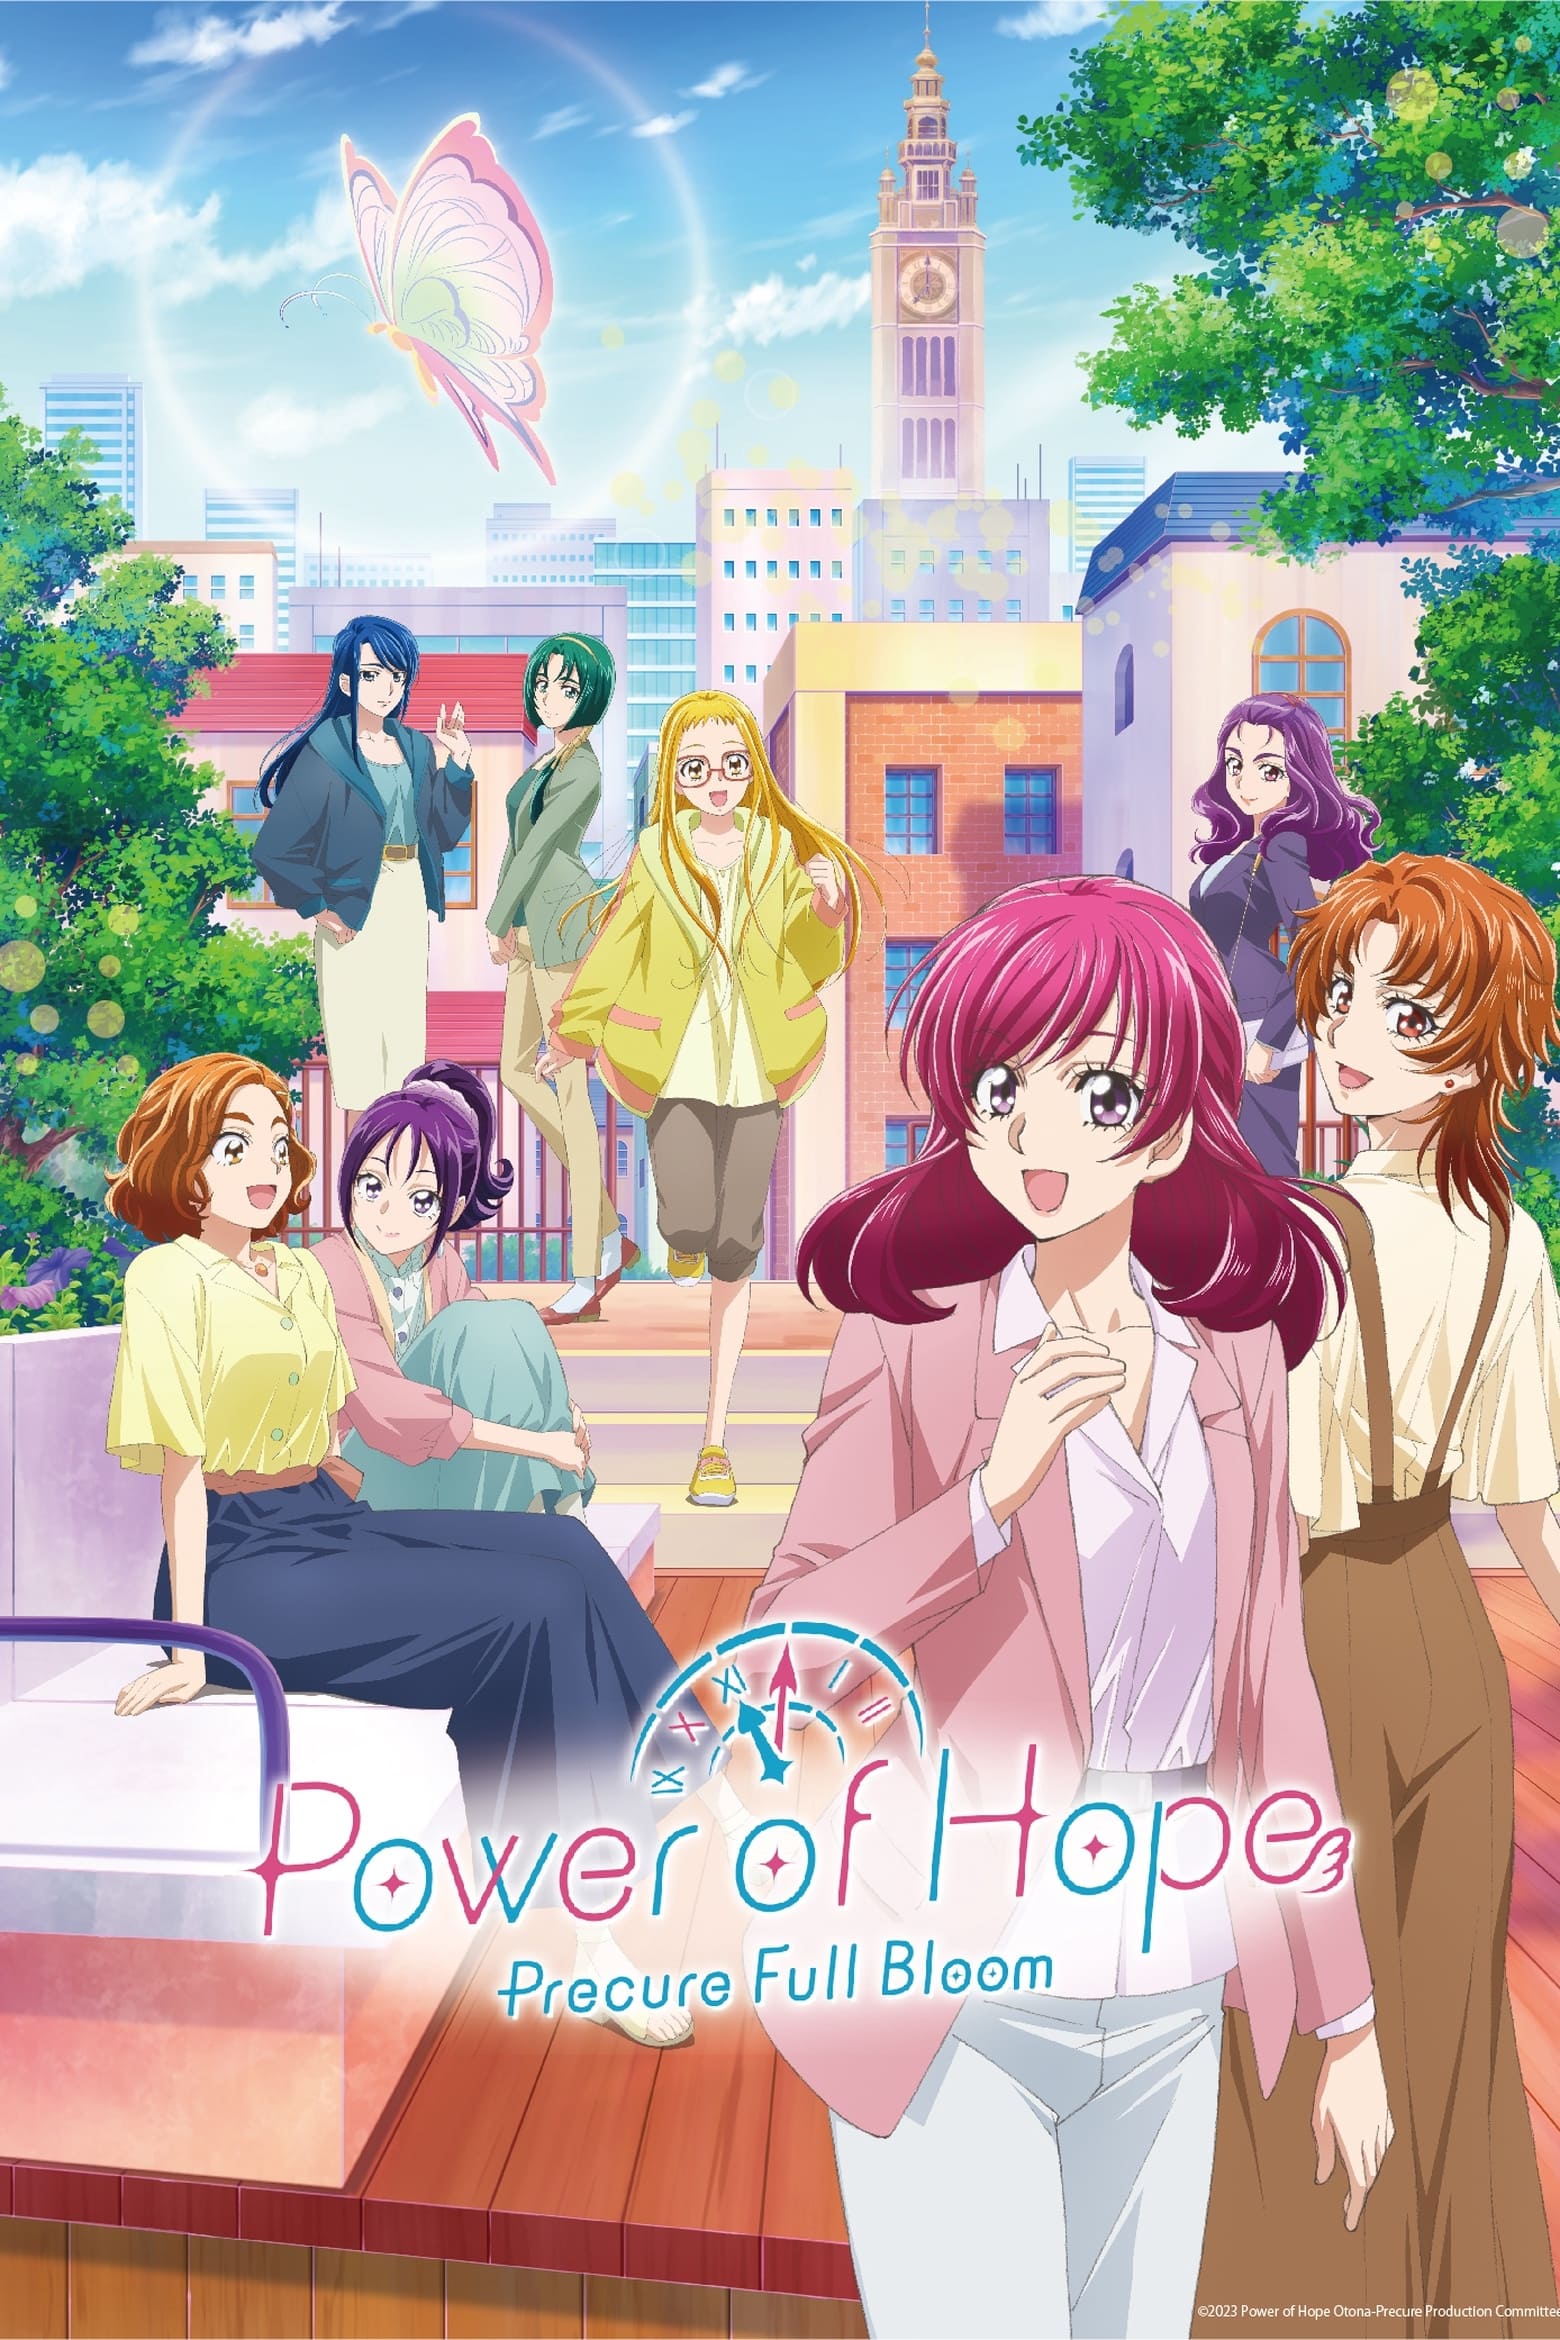 Power of Hope – Precure Full Bloom